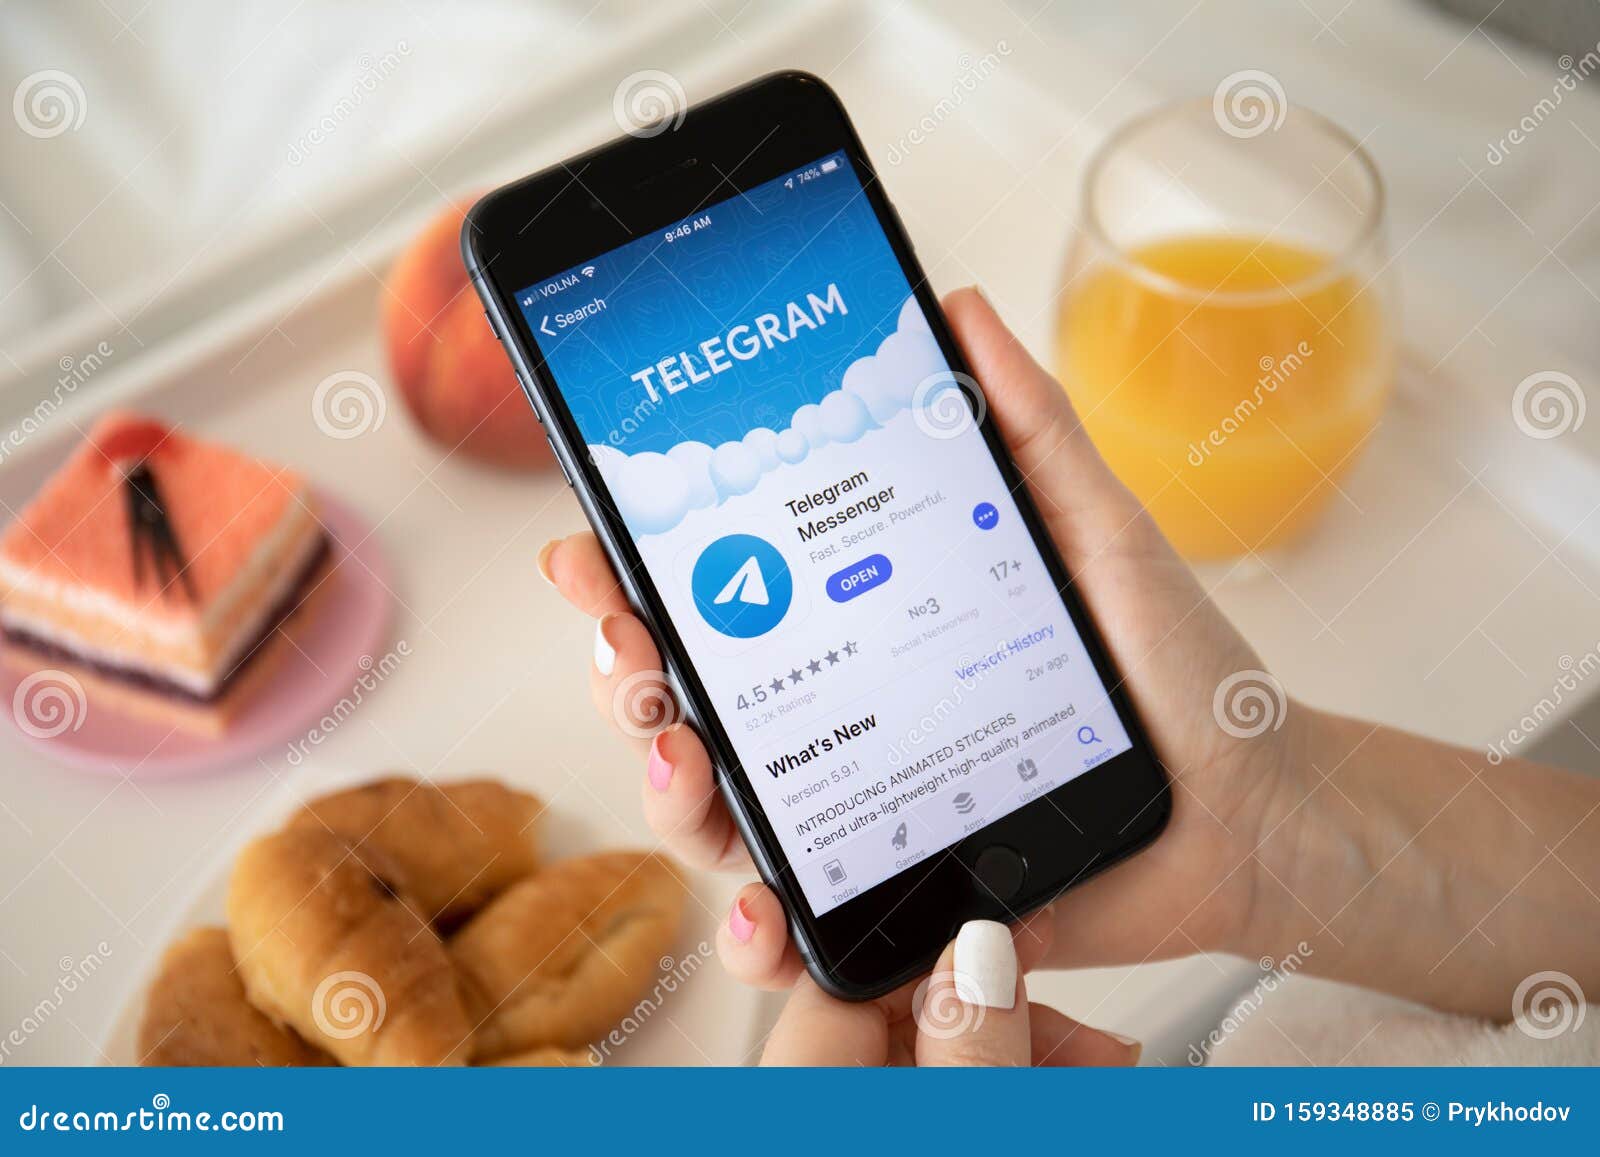 手持iphone 8 Plus社交网络服务telegram 编辑类图片 图片包括有plus社交网络服务telegram 手持iphone